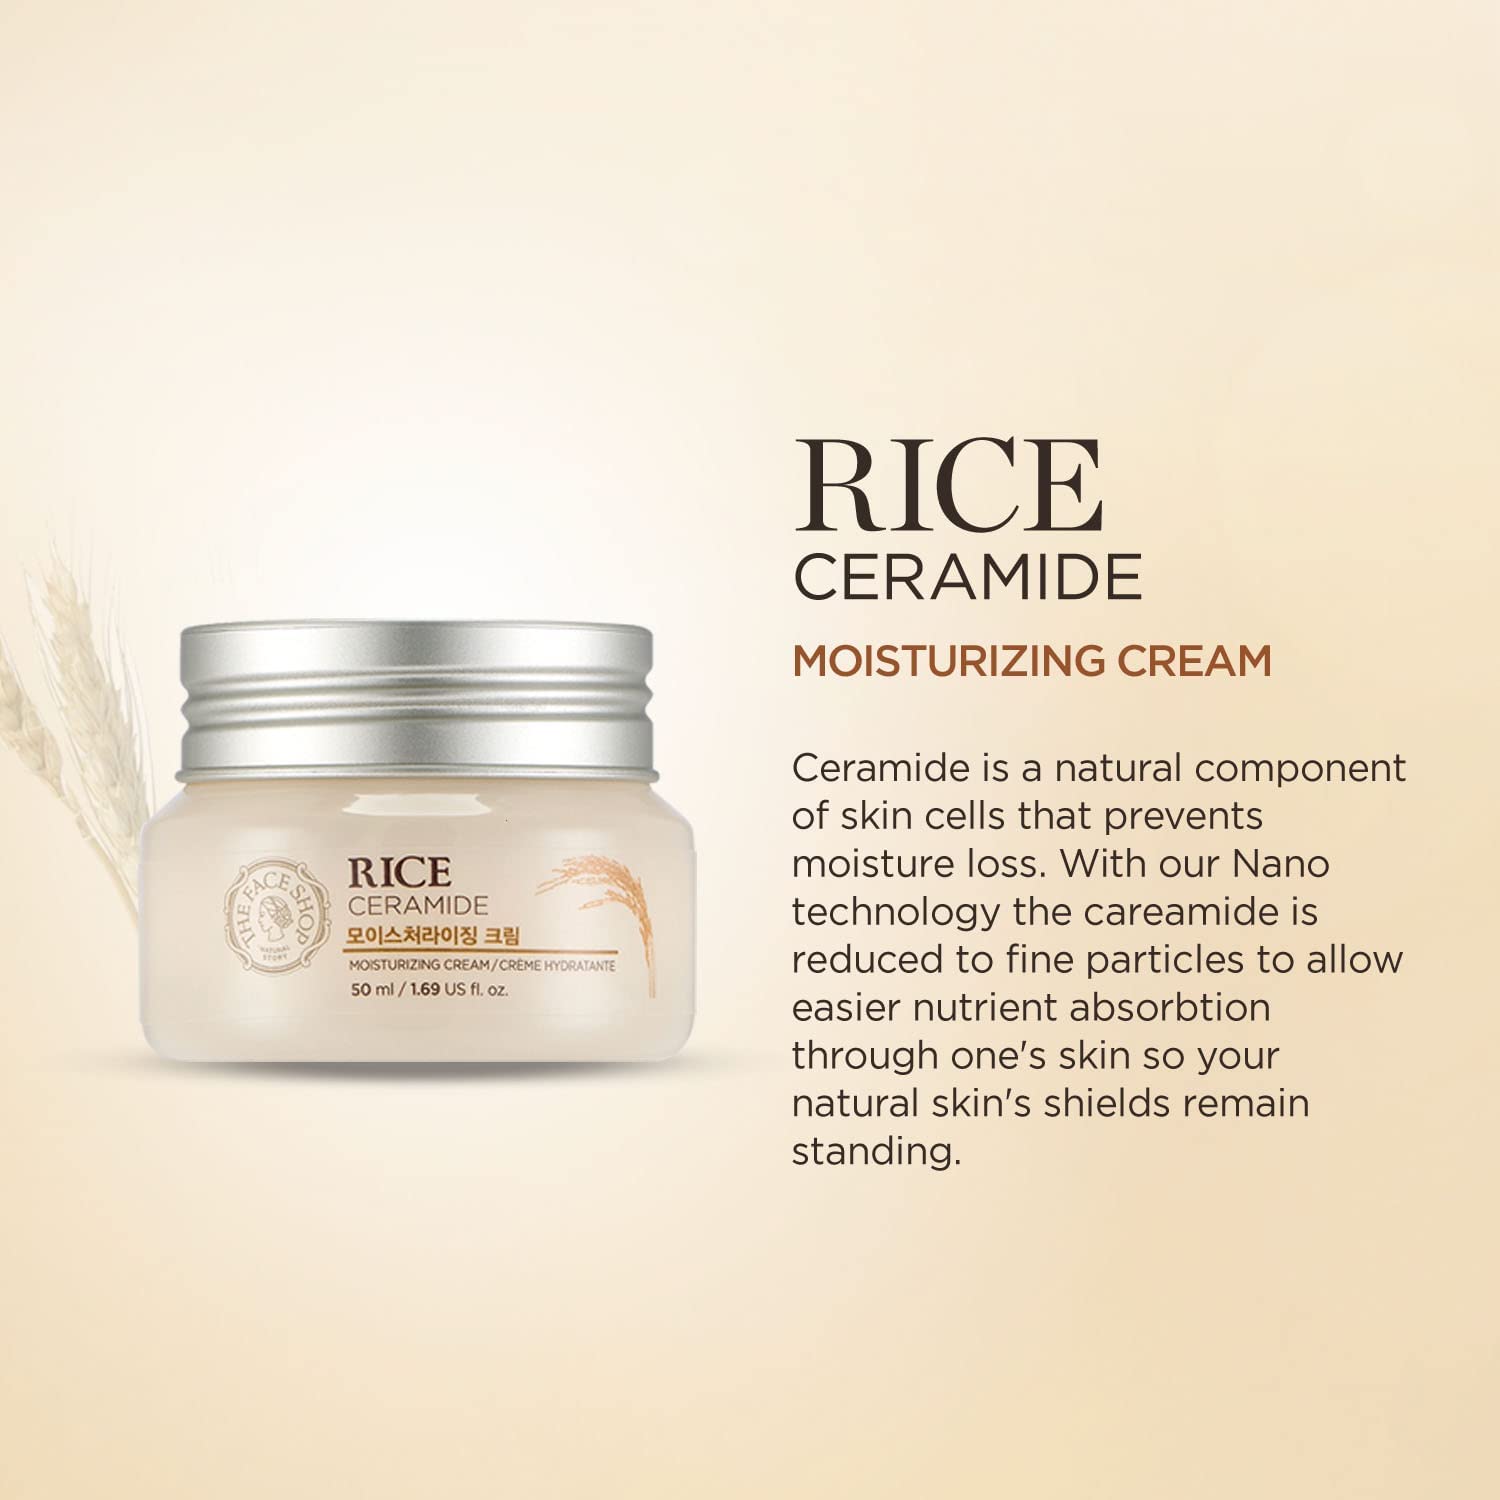 THE FACE SHOP Rice Ceramide Moisturizing Cream THE FACE SHOP